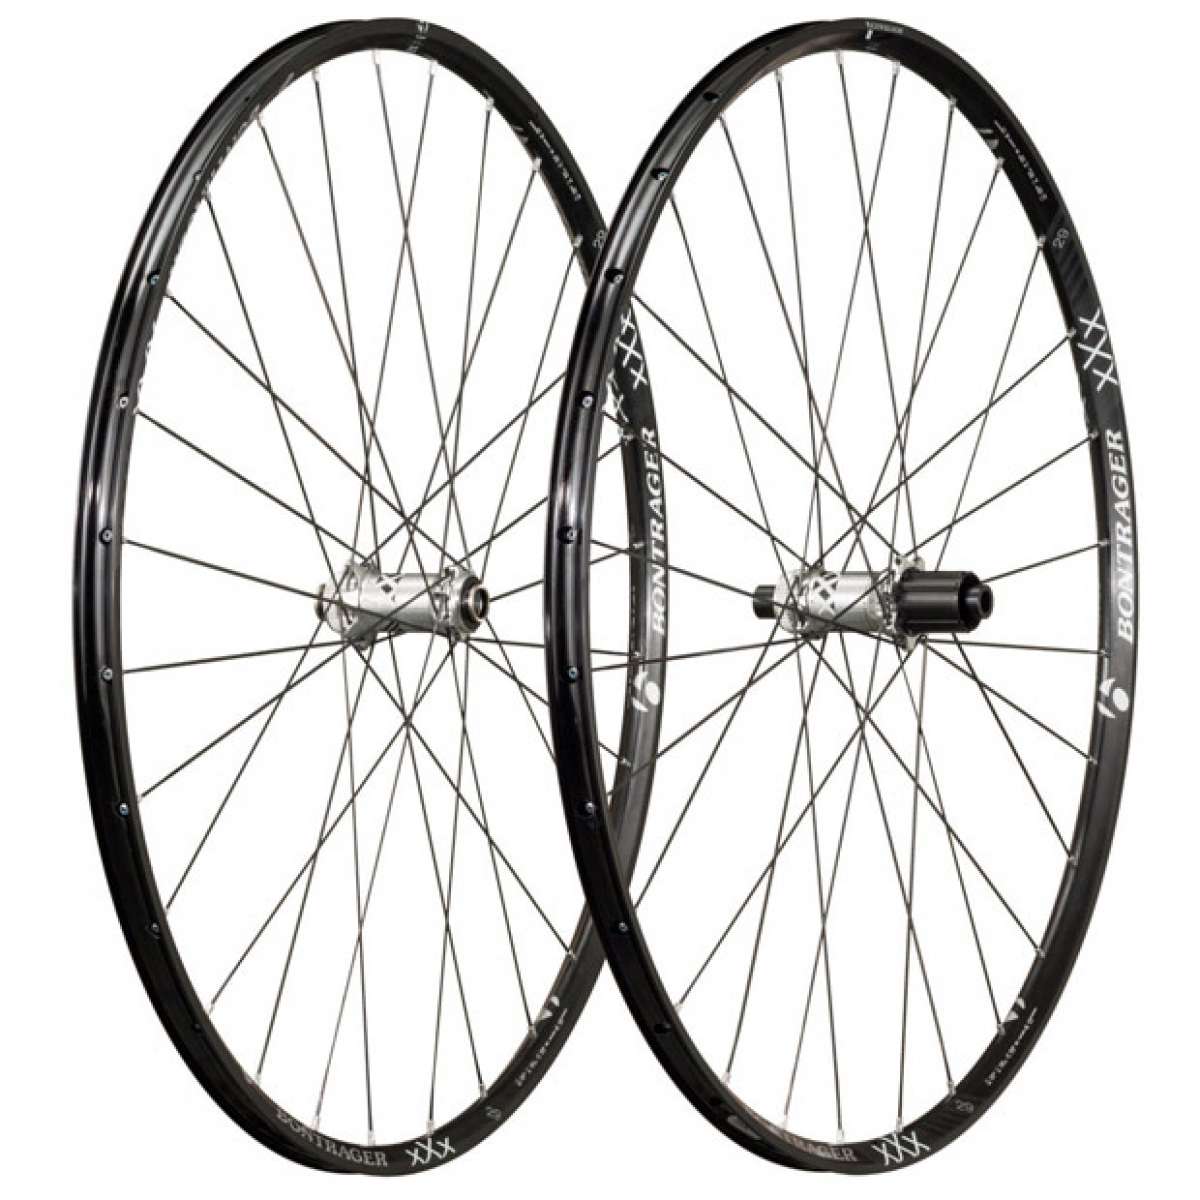 Nuevas y ultraligeras ruedas Bontrager XXX TLR de 26 y 29 pulgadas para 2014